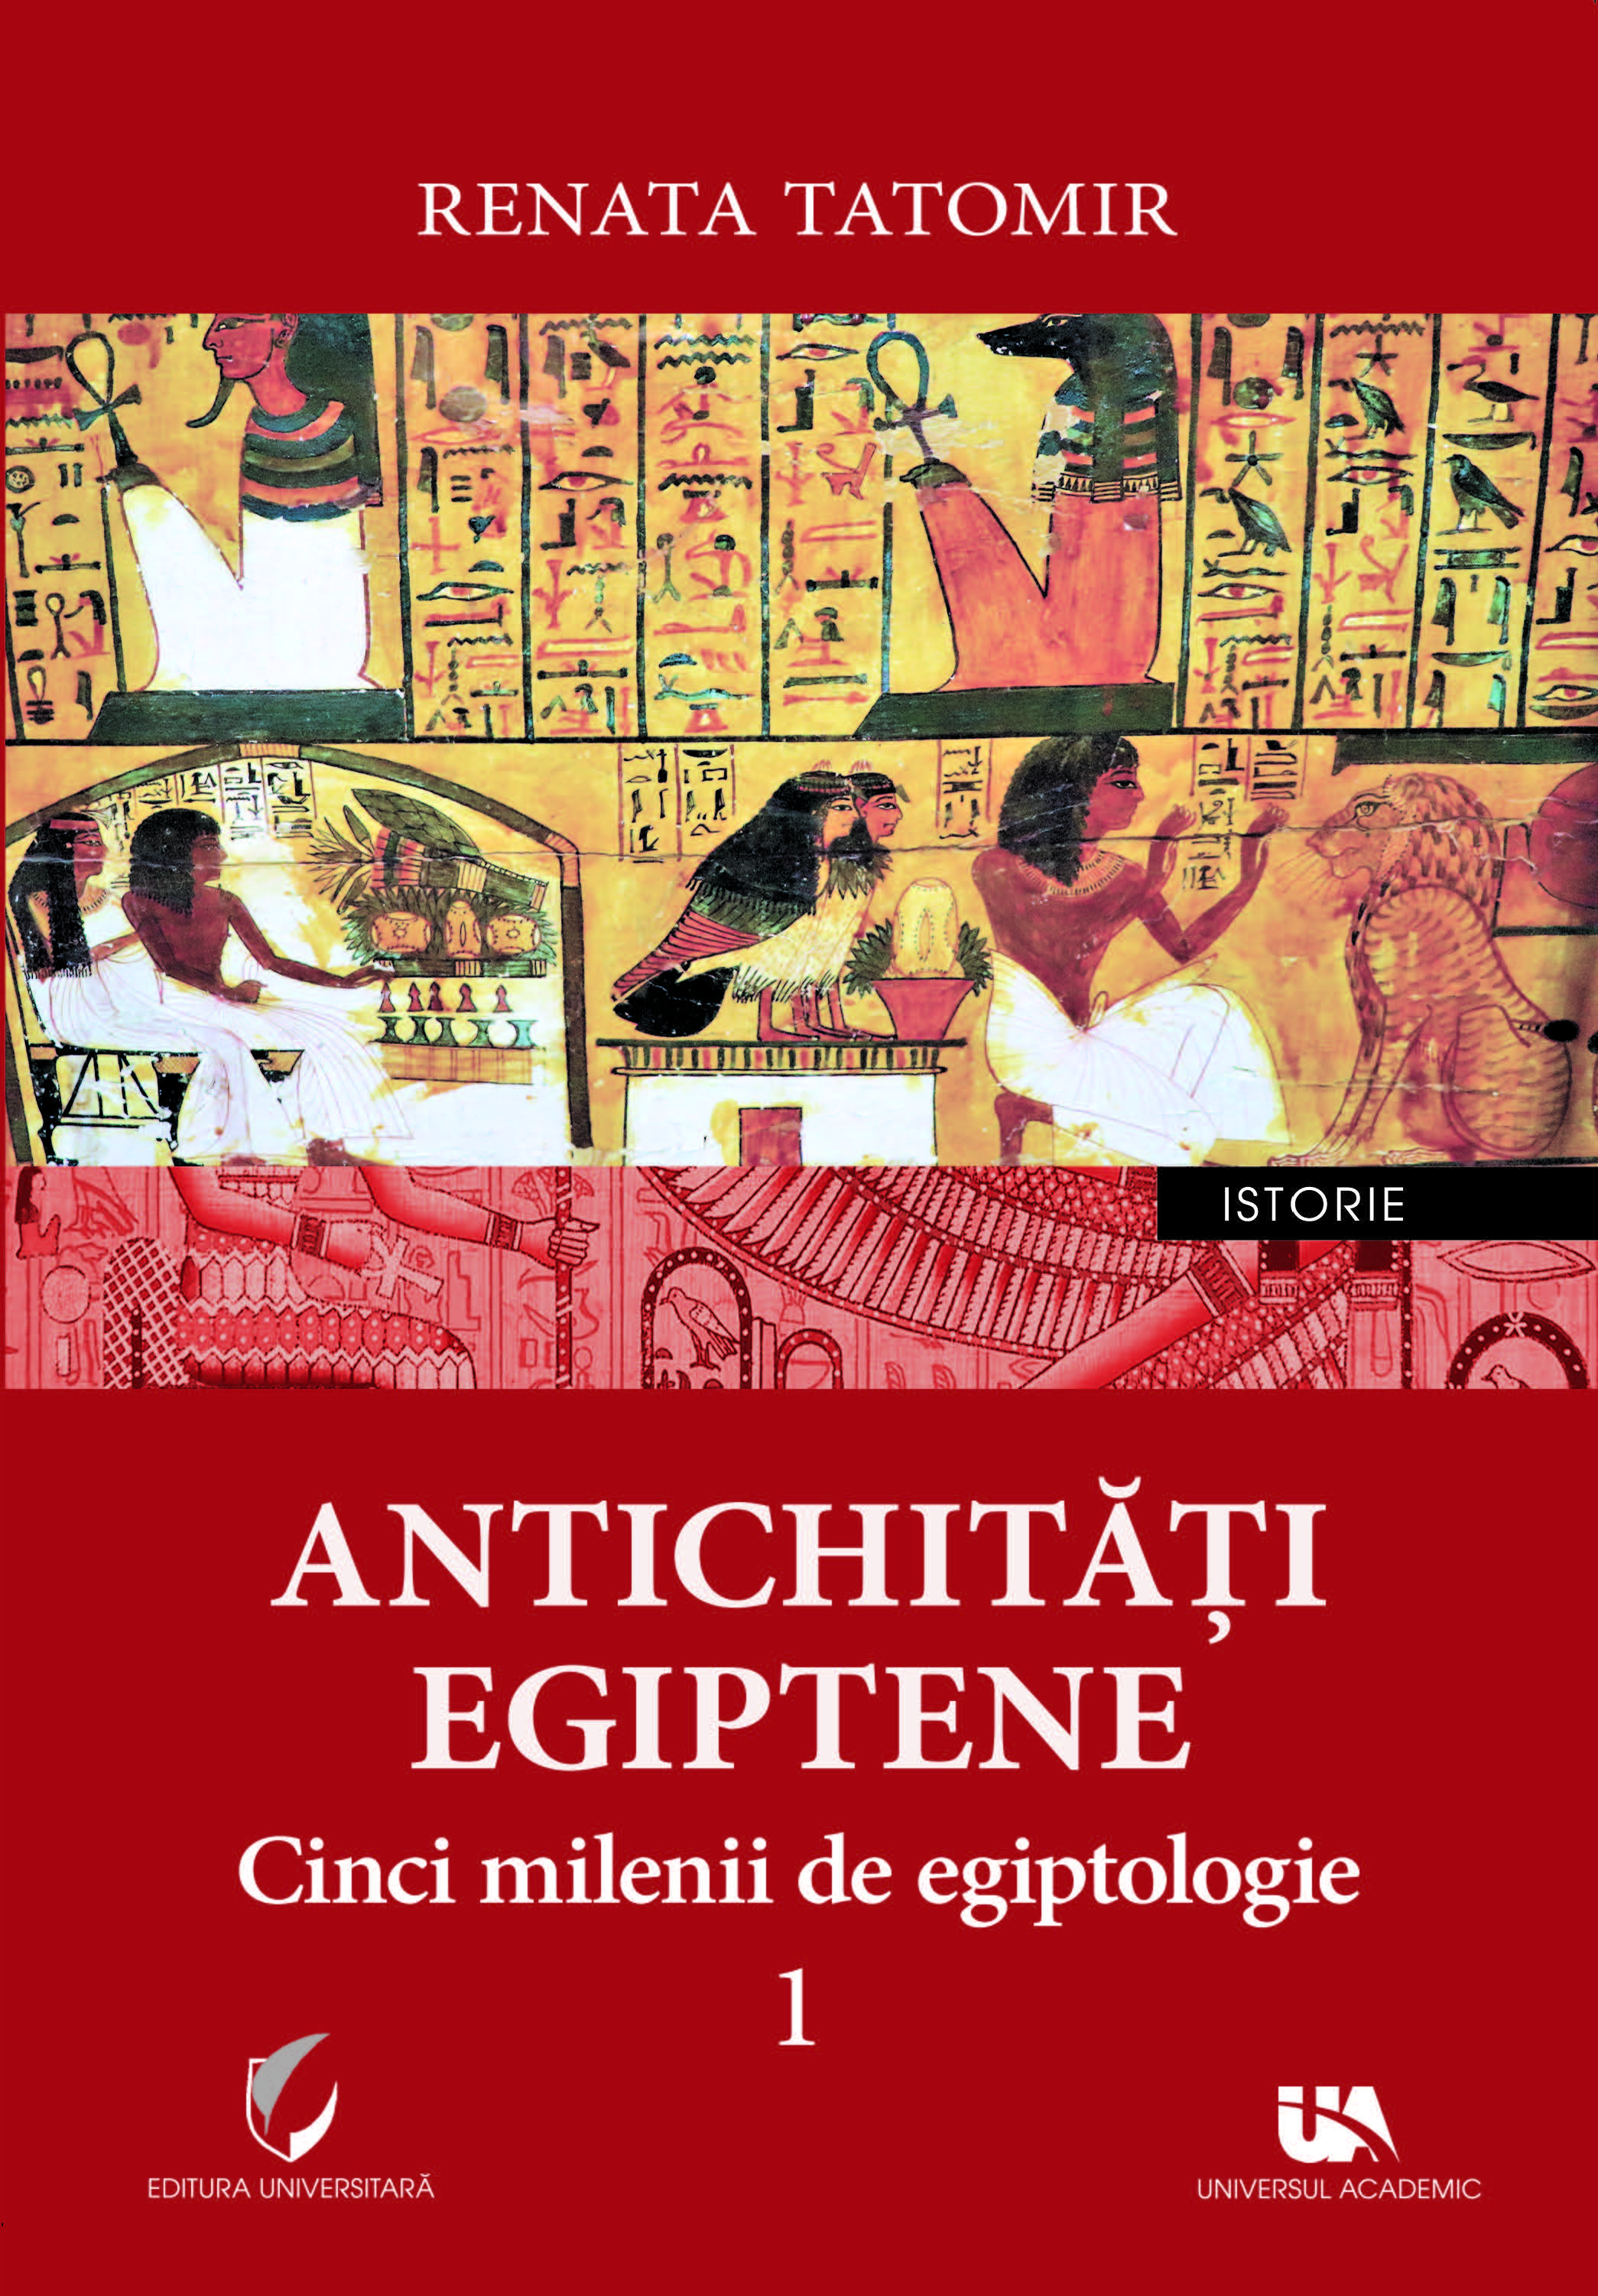 Antichitati egiptene | Renata Tatomir Antichitati